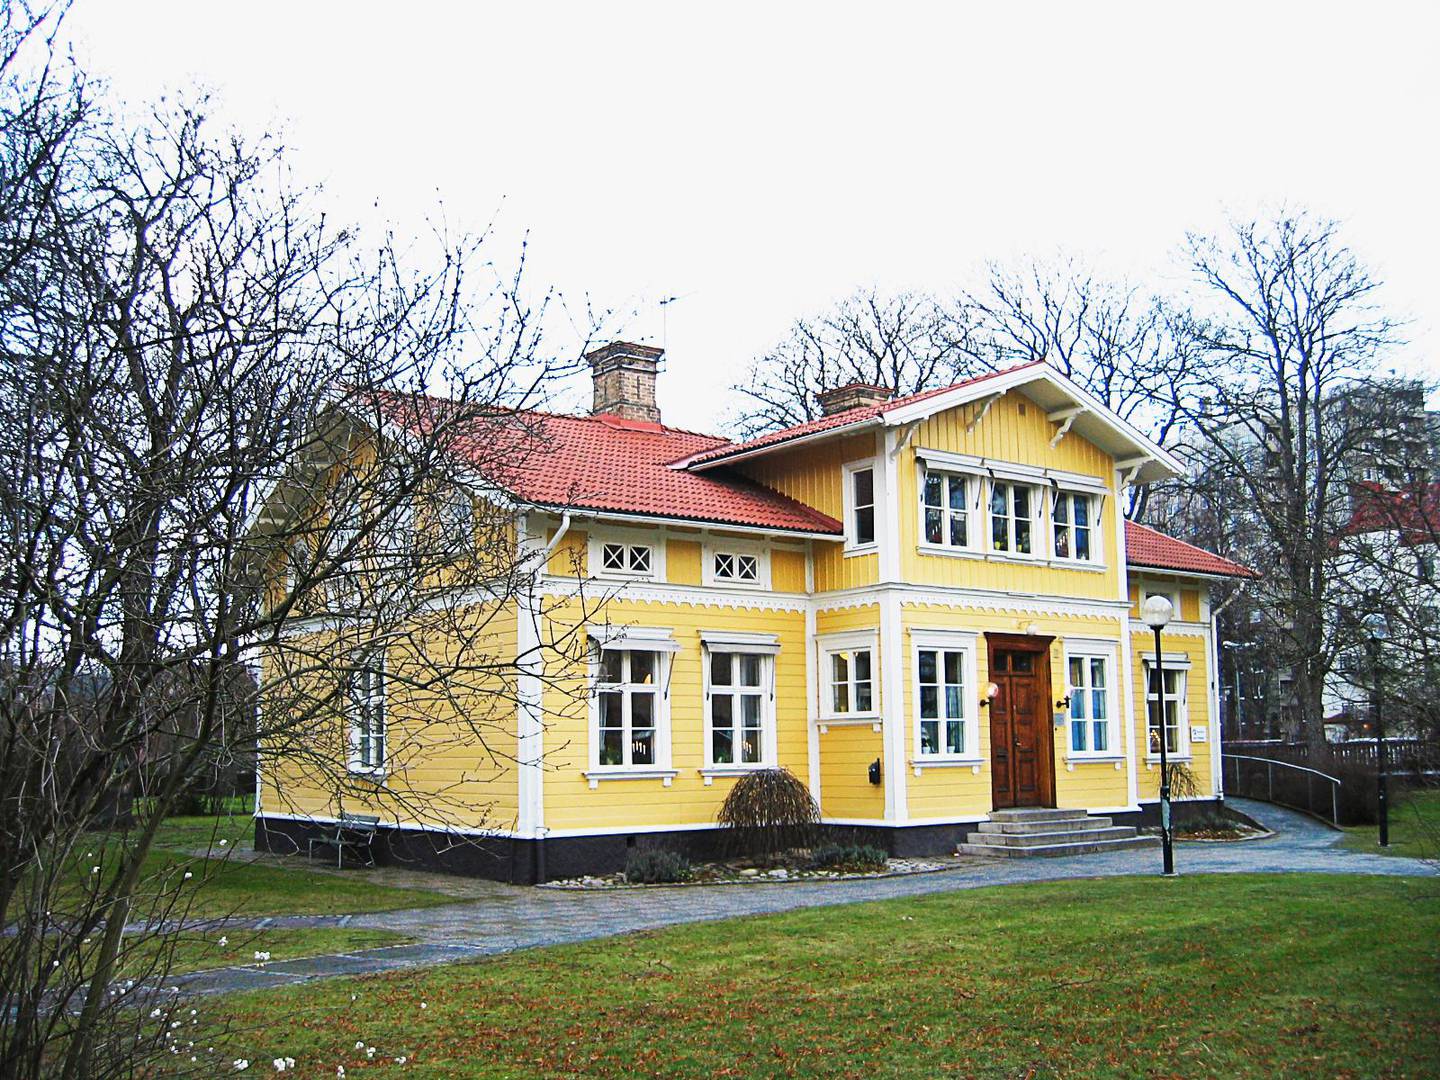 Lagermanska villan tillhör Svenska kyrkan i Jönköping, all ungdomsverksamhet i kyrkan stängdes ner efter en anmälan om sexbrott.